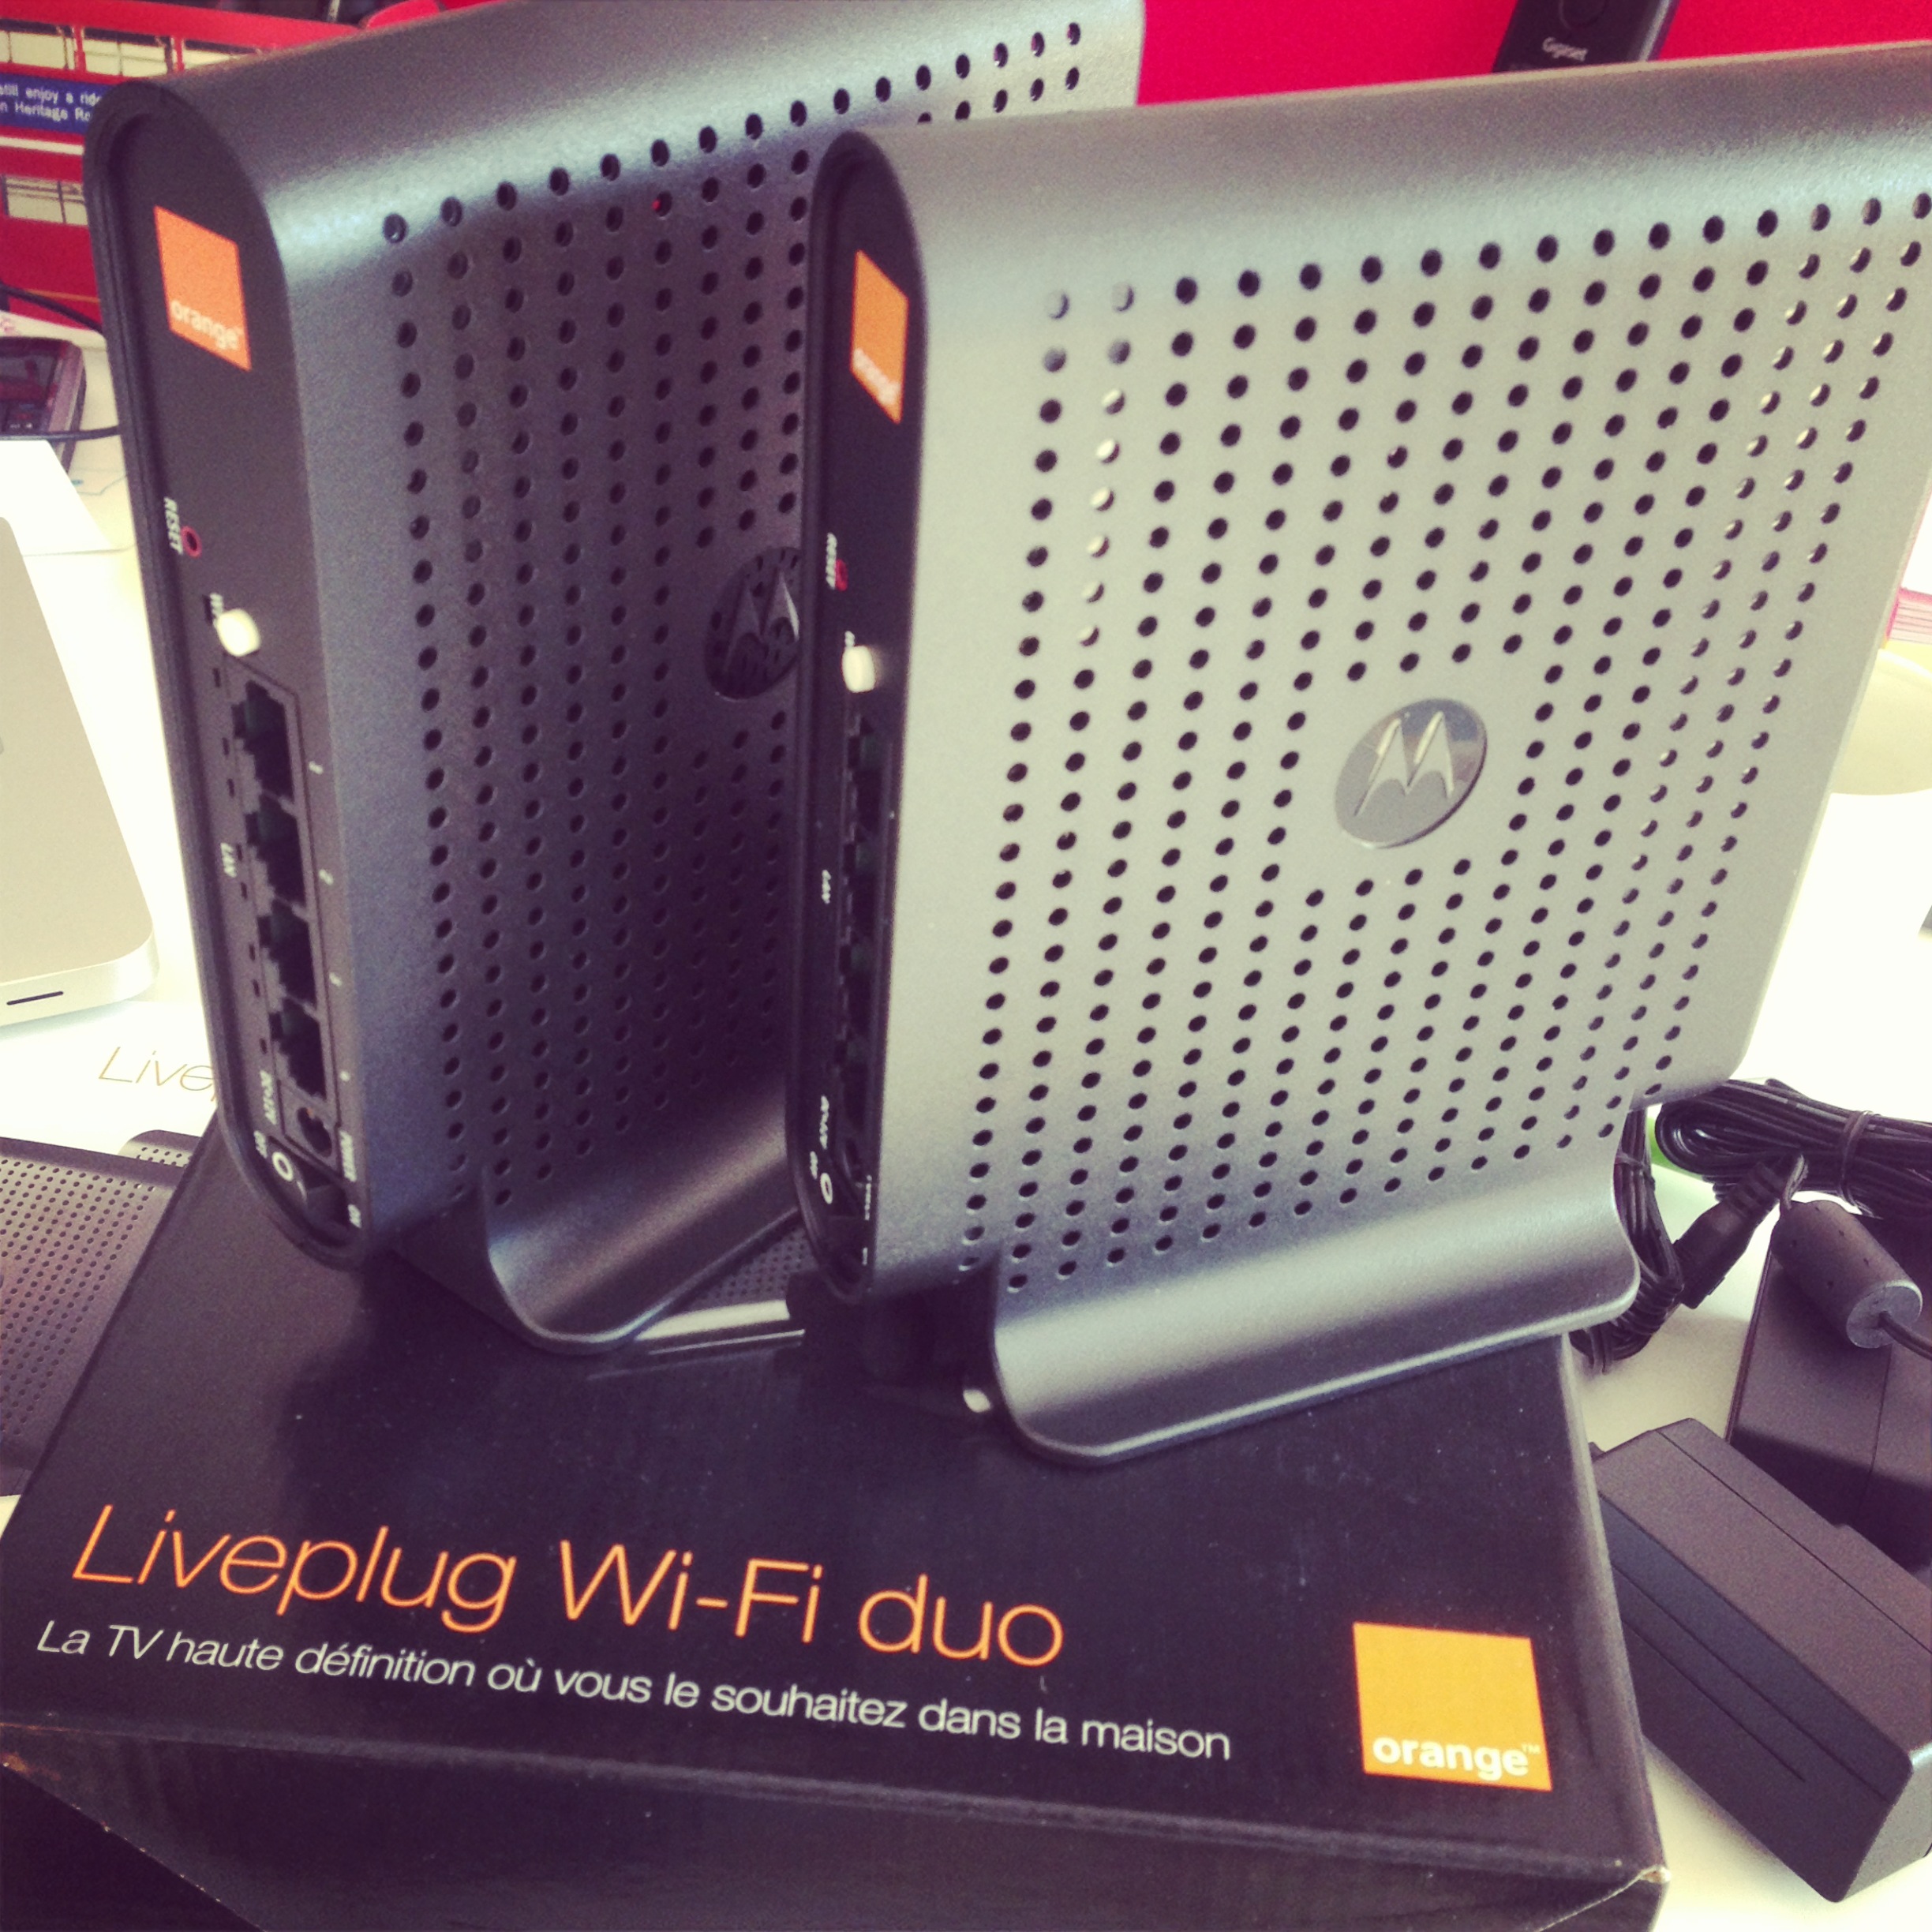 Le liveplug wifi duo en remplacement d'un boitier CPL? – 2803, le blog web  2.0, Internet et technologies